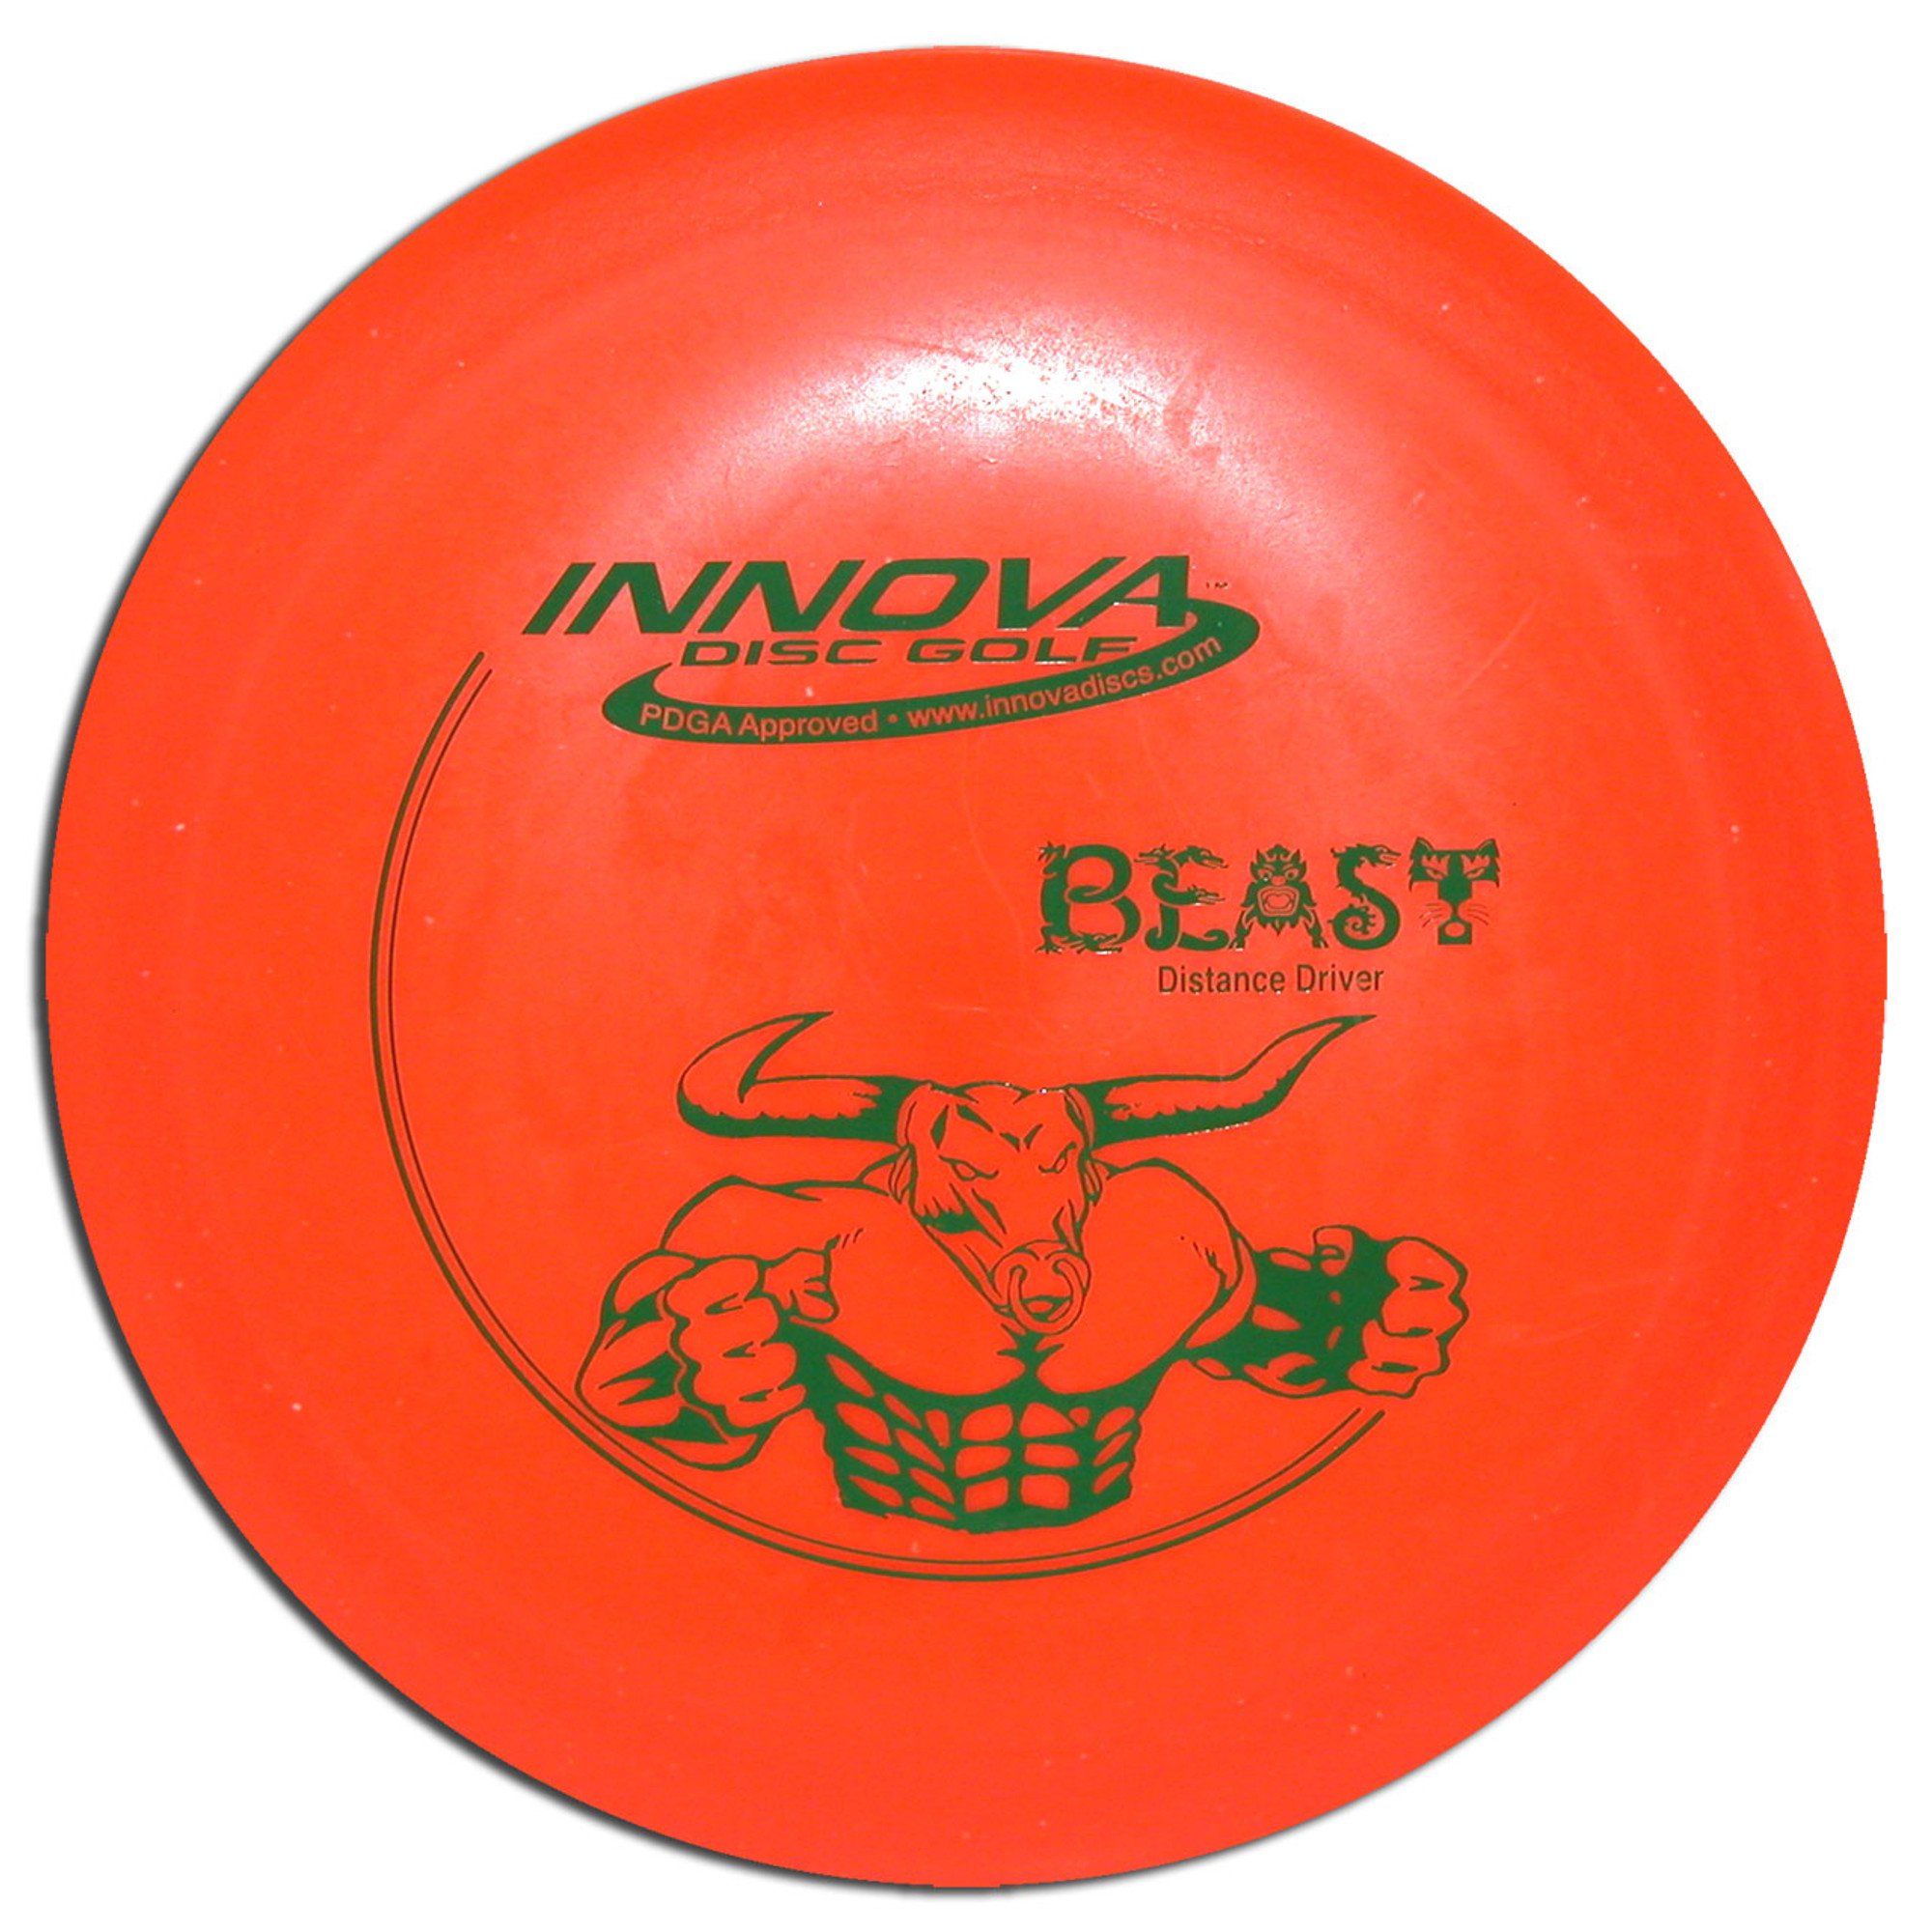 the beast mini frisbee